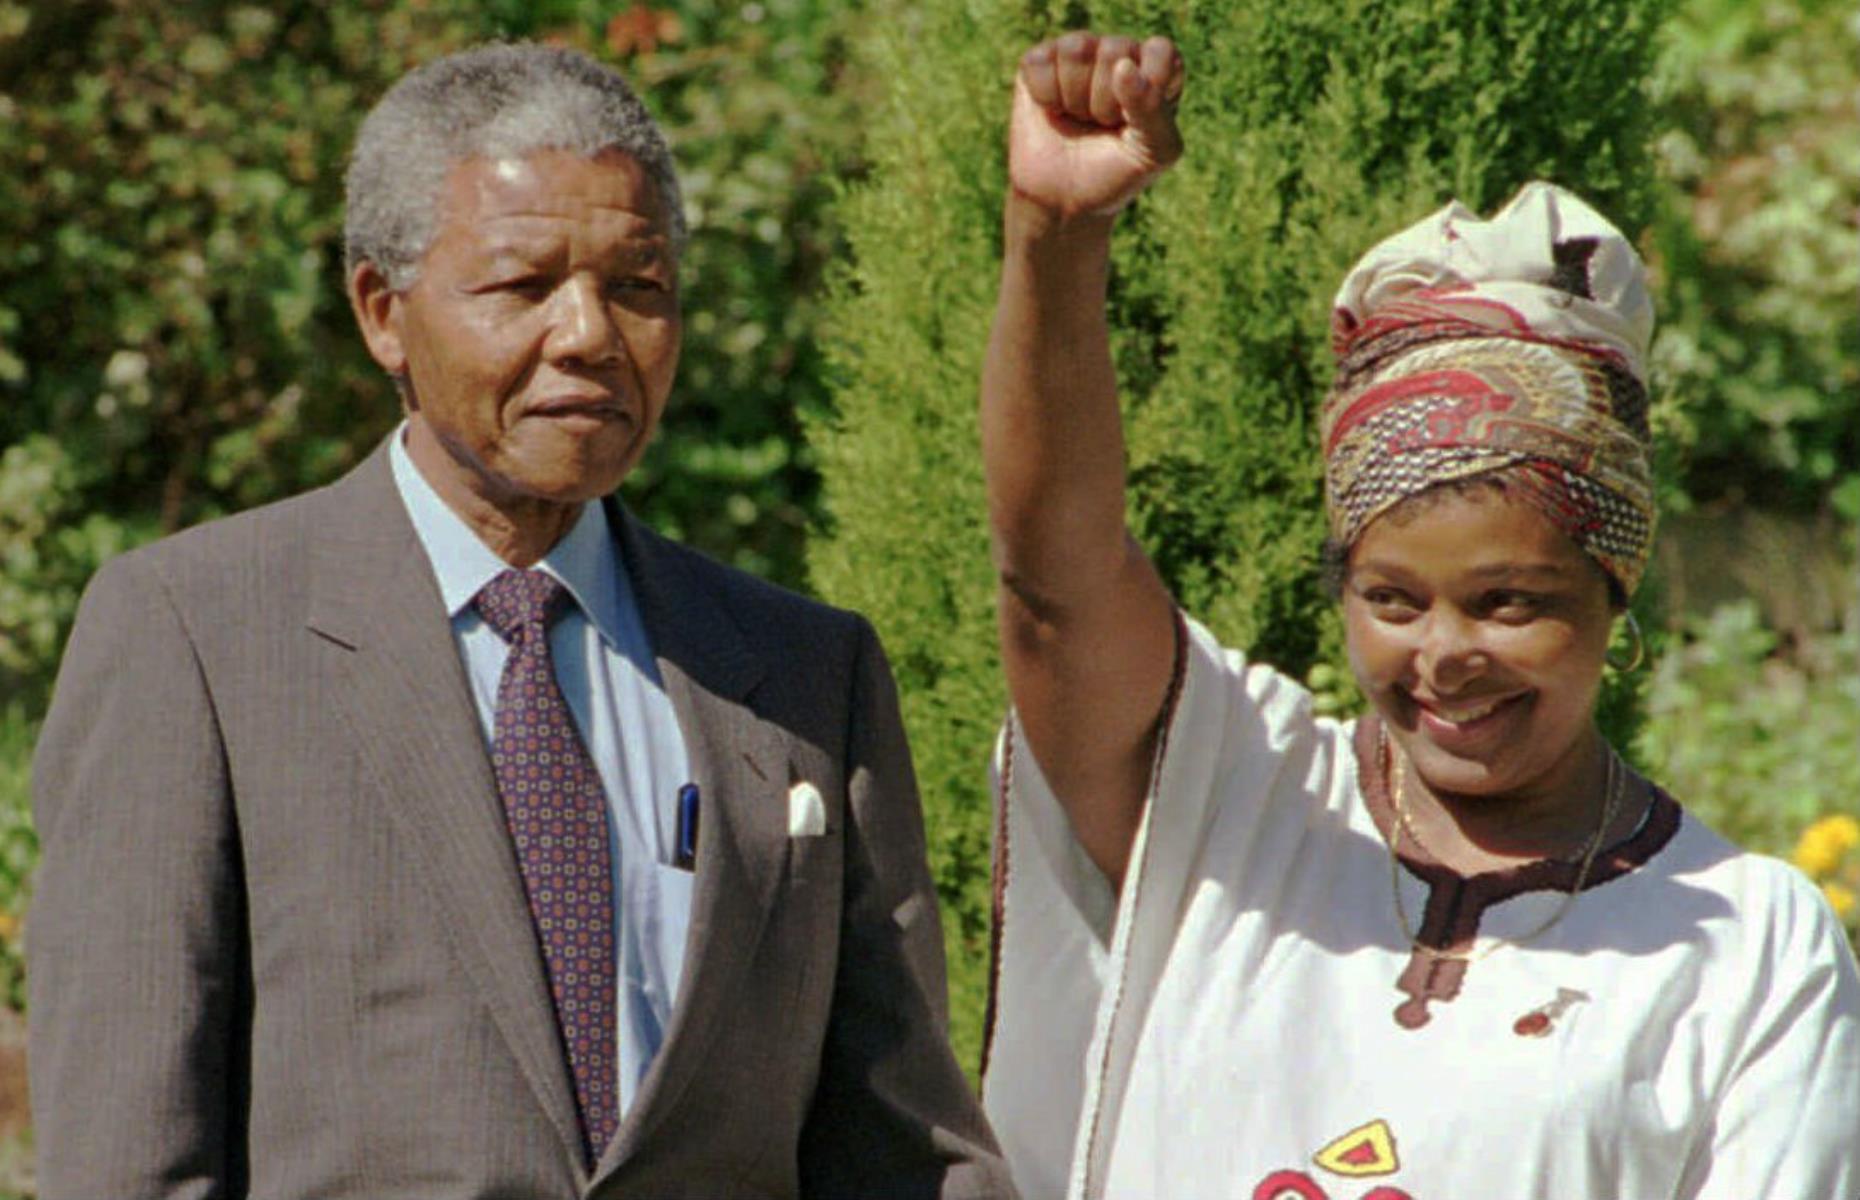 1990: Nelson Mandela is freed